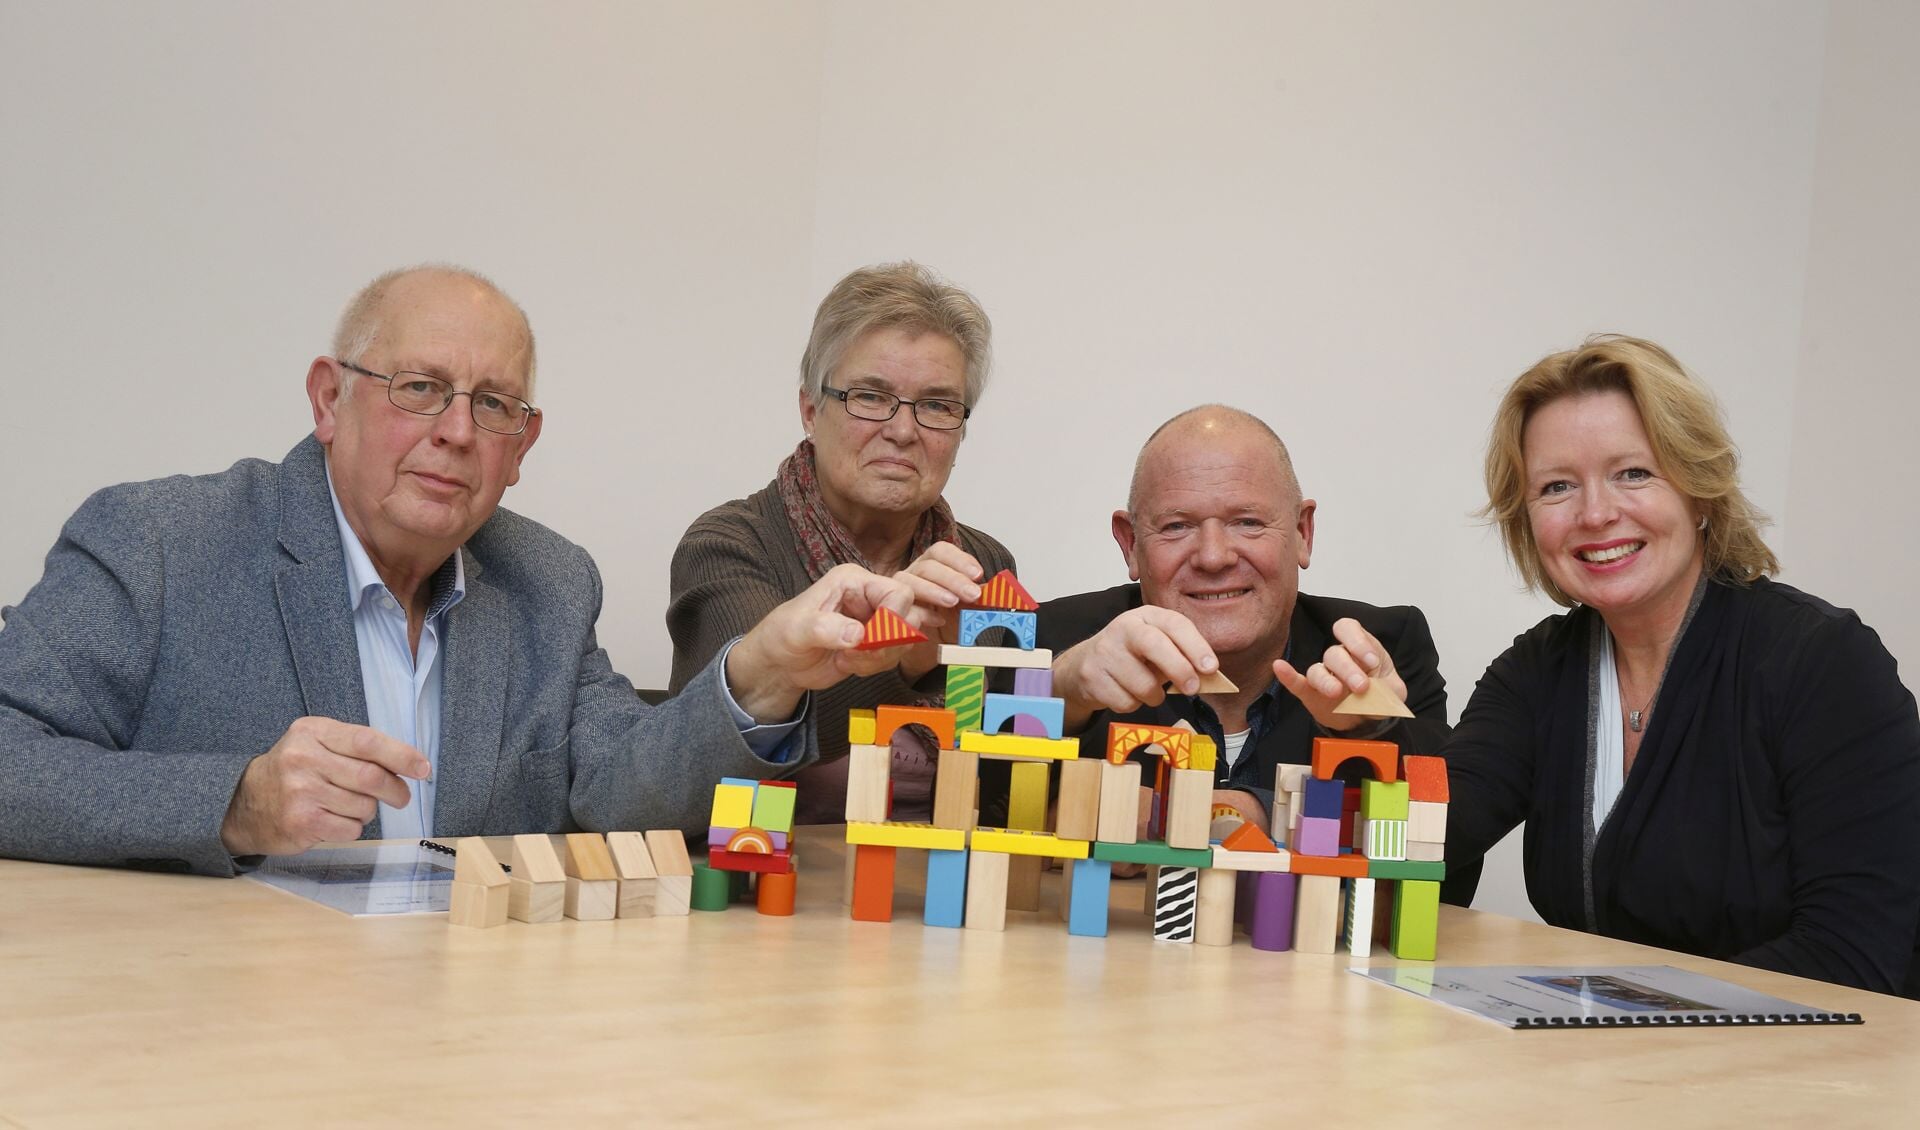 Samen verder bouwen aan betaalbaar en prettig wonen. Op de foto staan van links naar rechts: Henny Timmermans, Nardy Cupers, Henk Meulenkamp en Patricia Hoytink-Roubos. Foto: PR